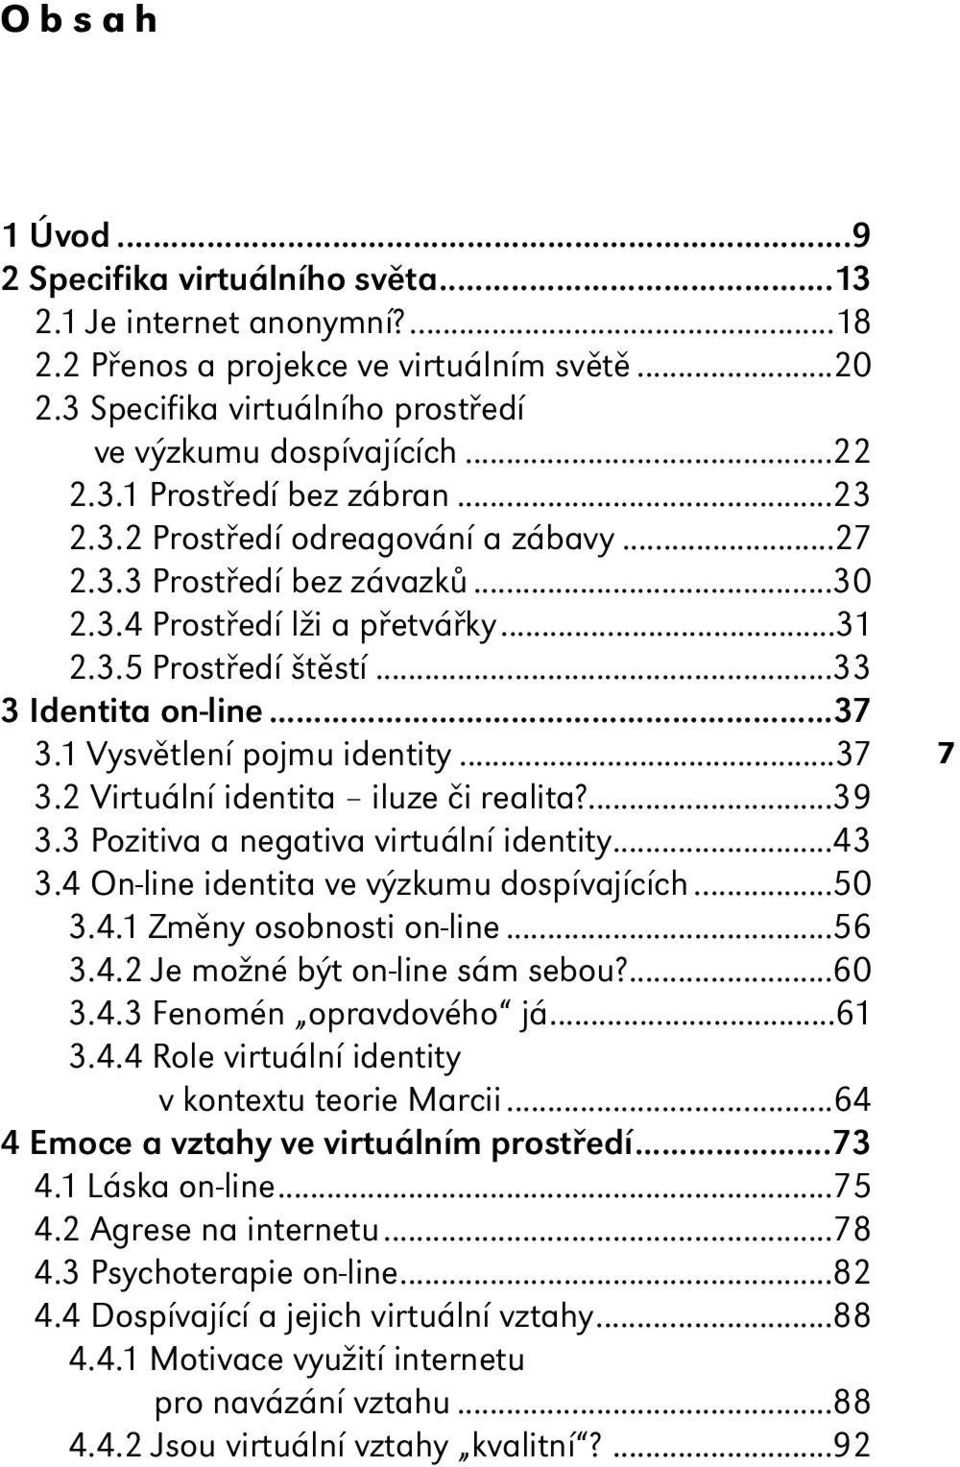 ..37 3.2 Virtuální identita iluze či realita?...39 3.3 Pozitiva a negativa virtuální identity...43 3.4 On-line identita ve výzkumu dospívajících...50 3.4.1 Změny osobnosti on-line...56 3.4.2 Je možné být on-line sám sebou?